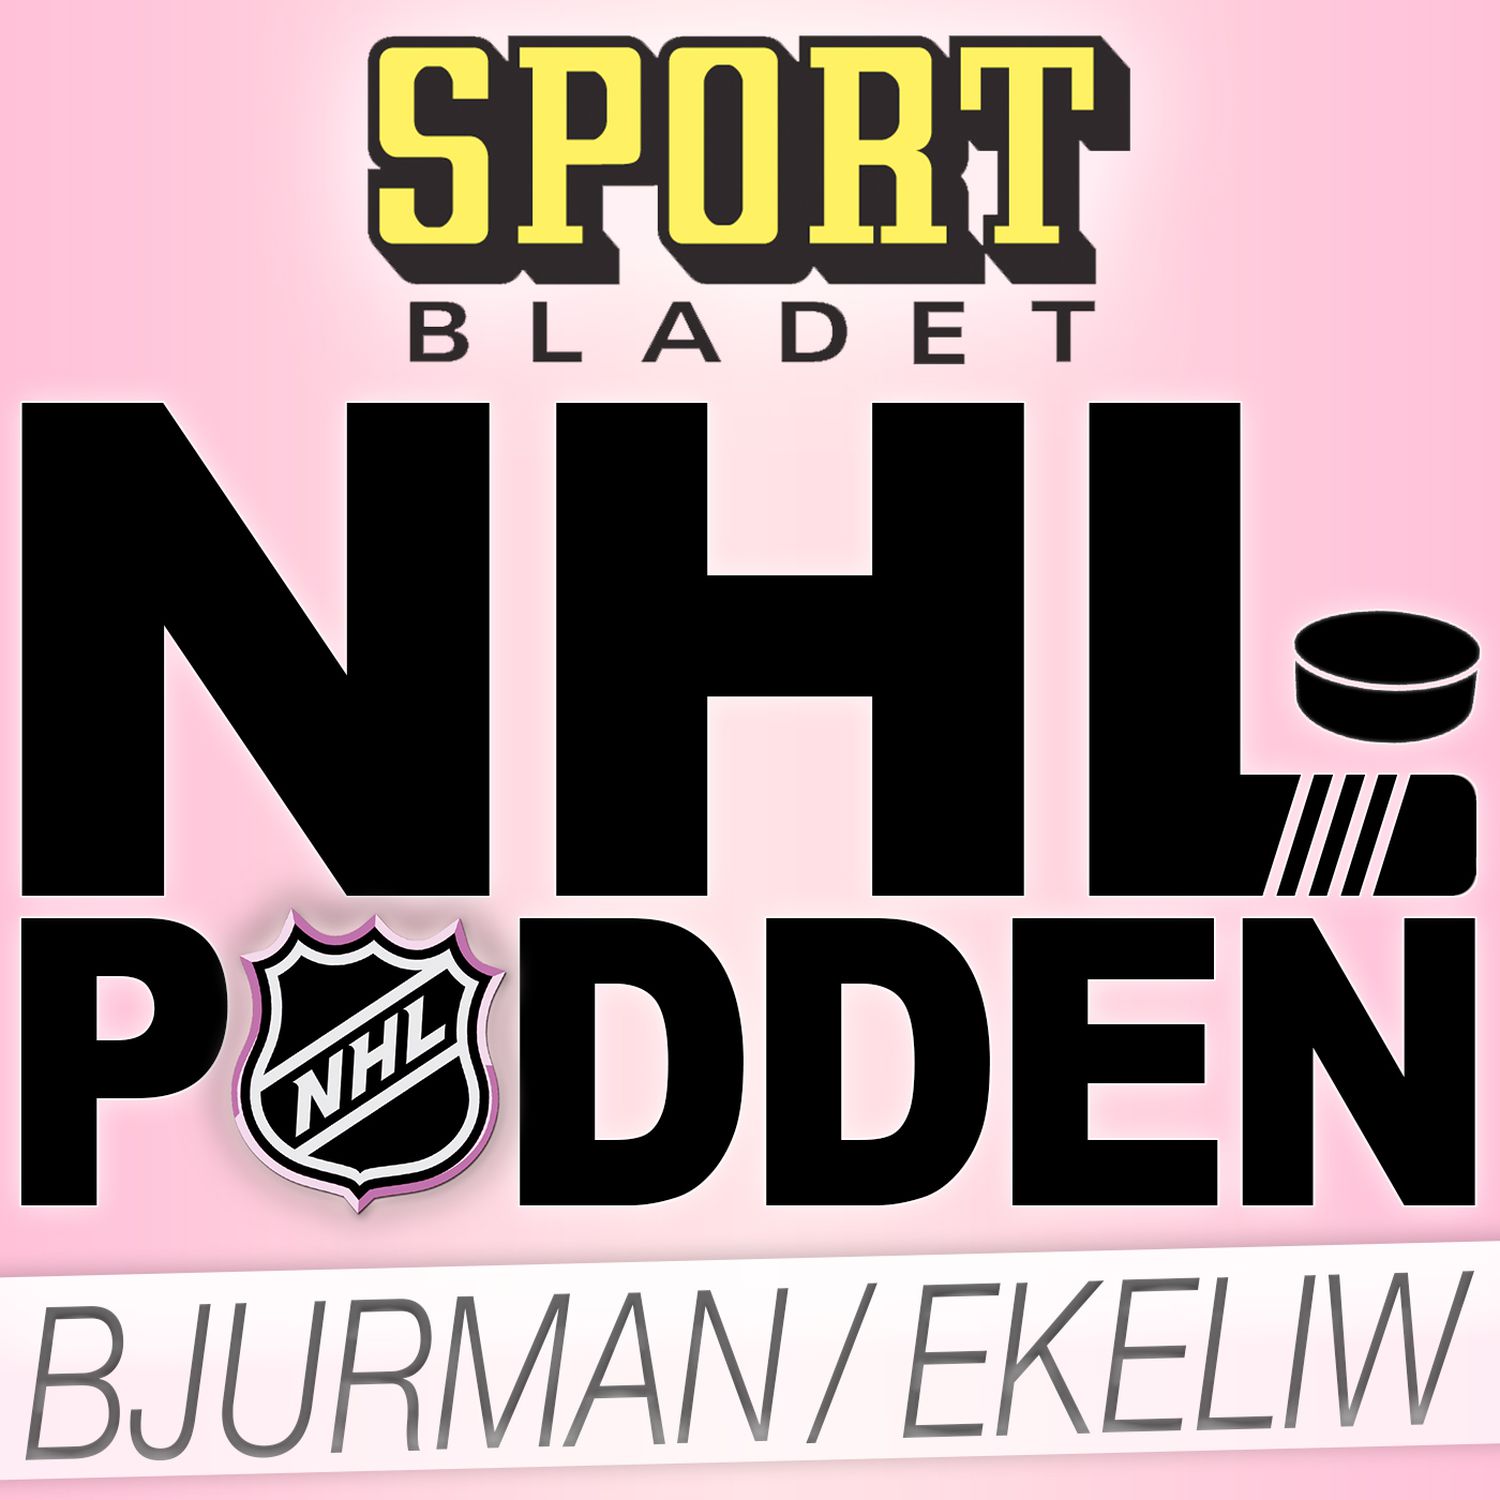 NHL-podden med Bjurman och Ekeliw on acast